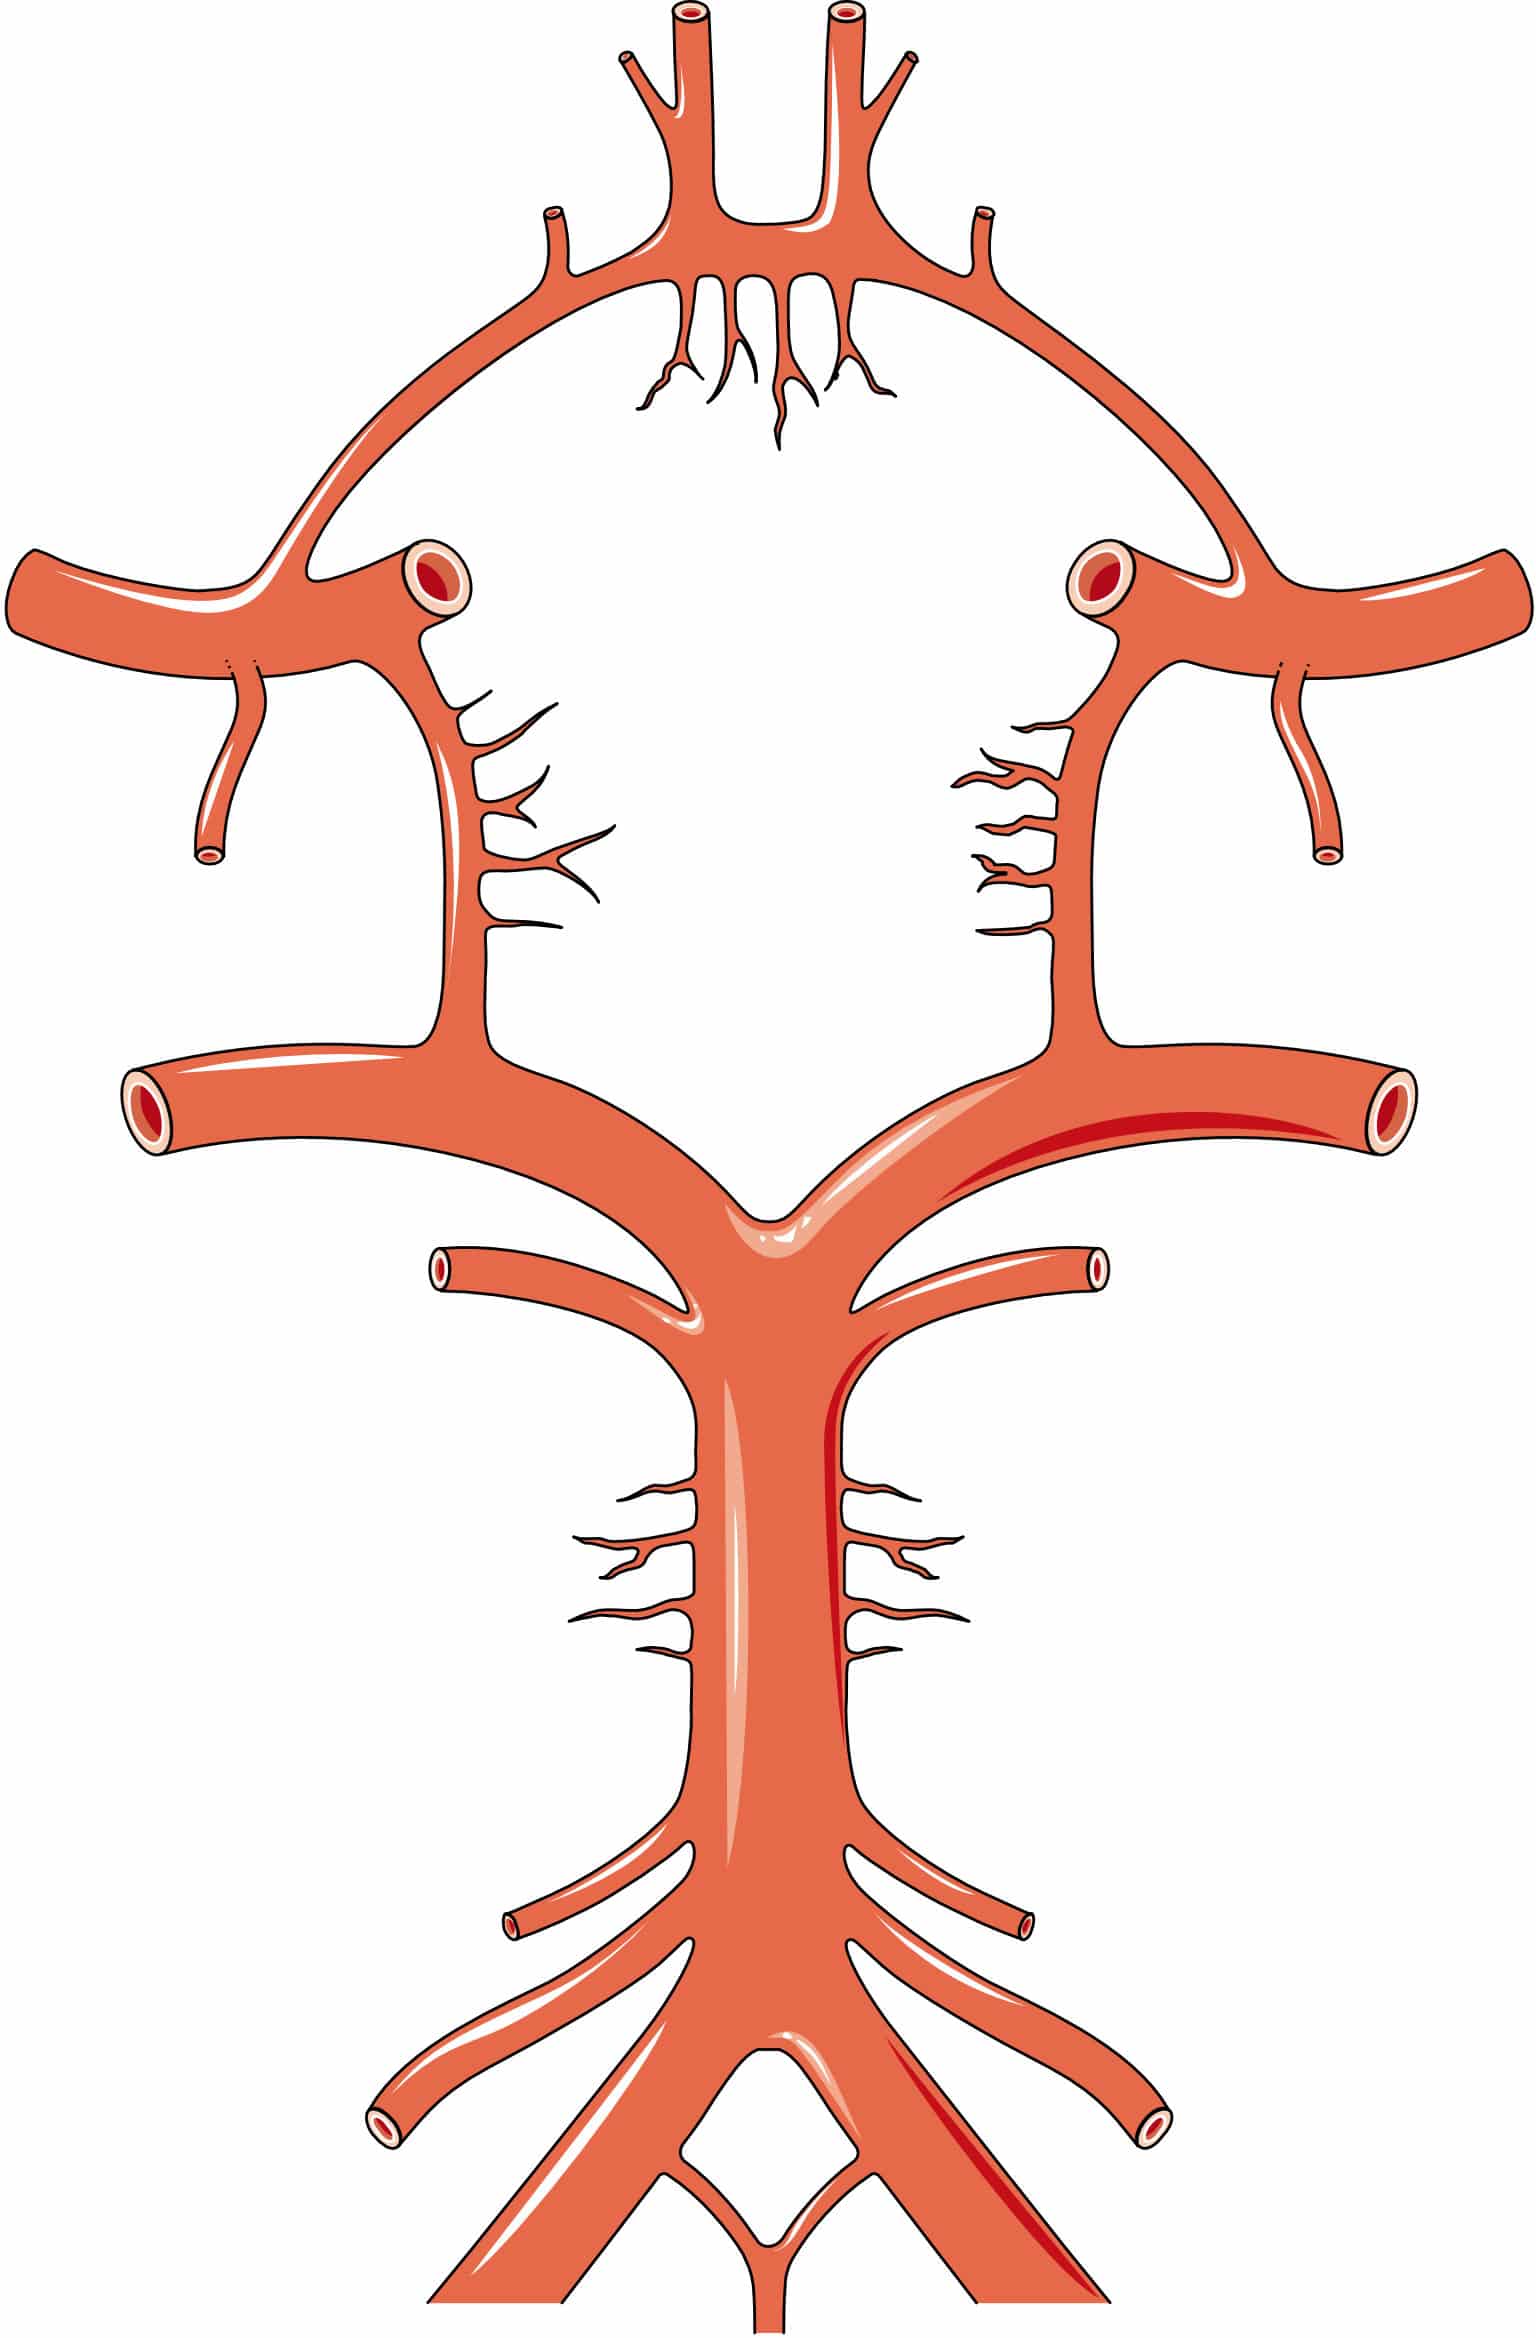 O polígono de Willis tem ramificações e bifurcações com aneurismas